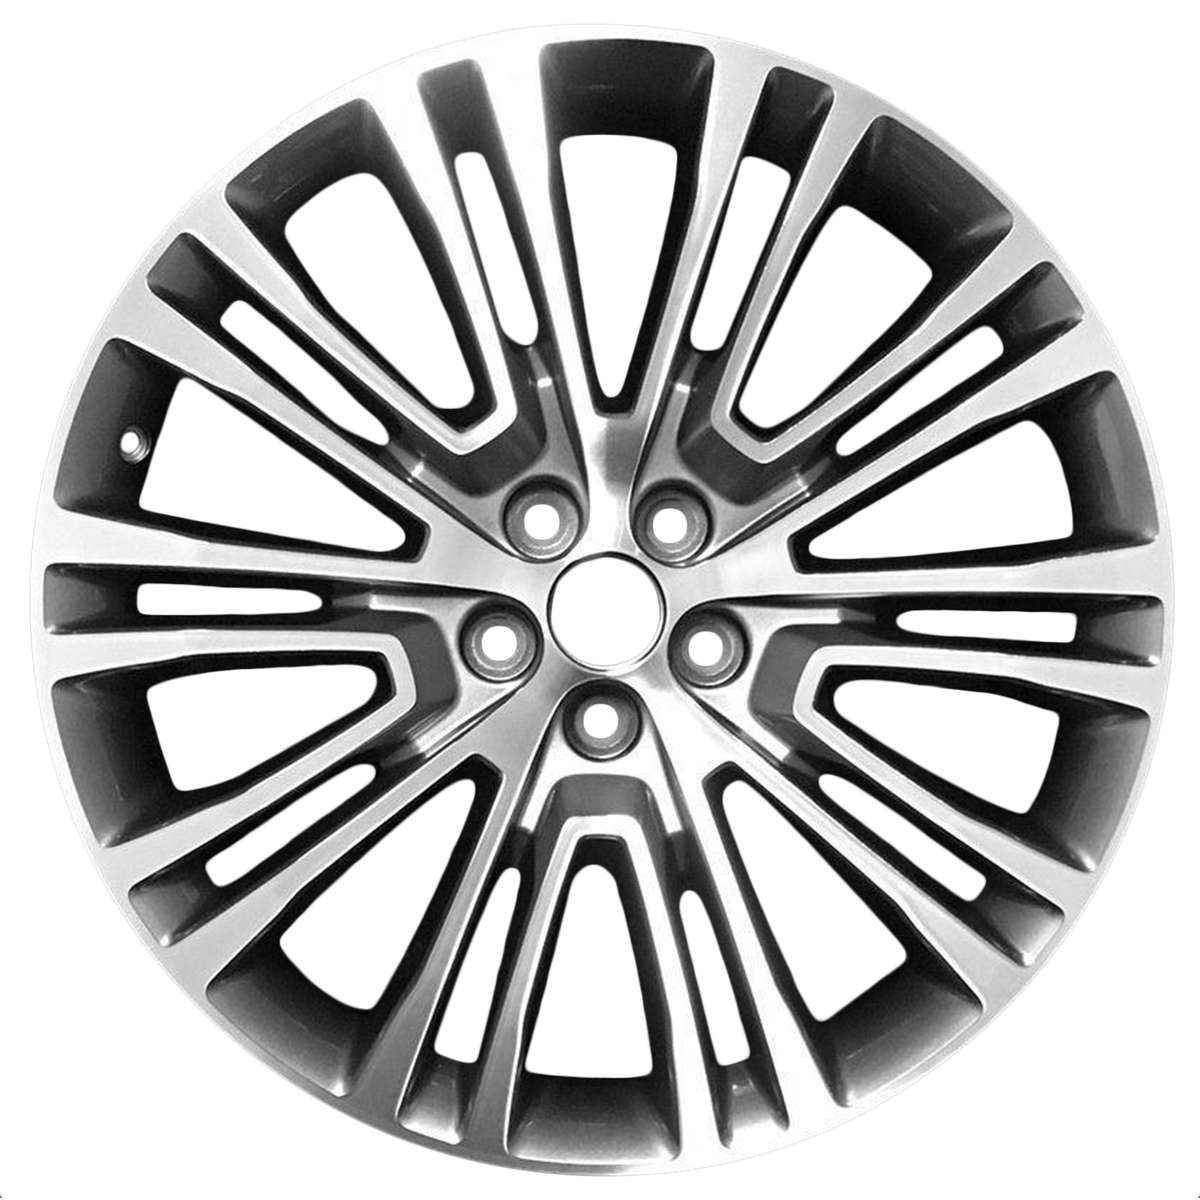 2016 Lincoln MKX 20" OEM Wheel Rim W10075MC